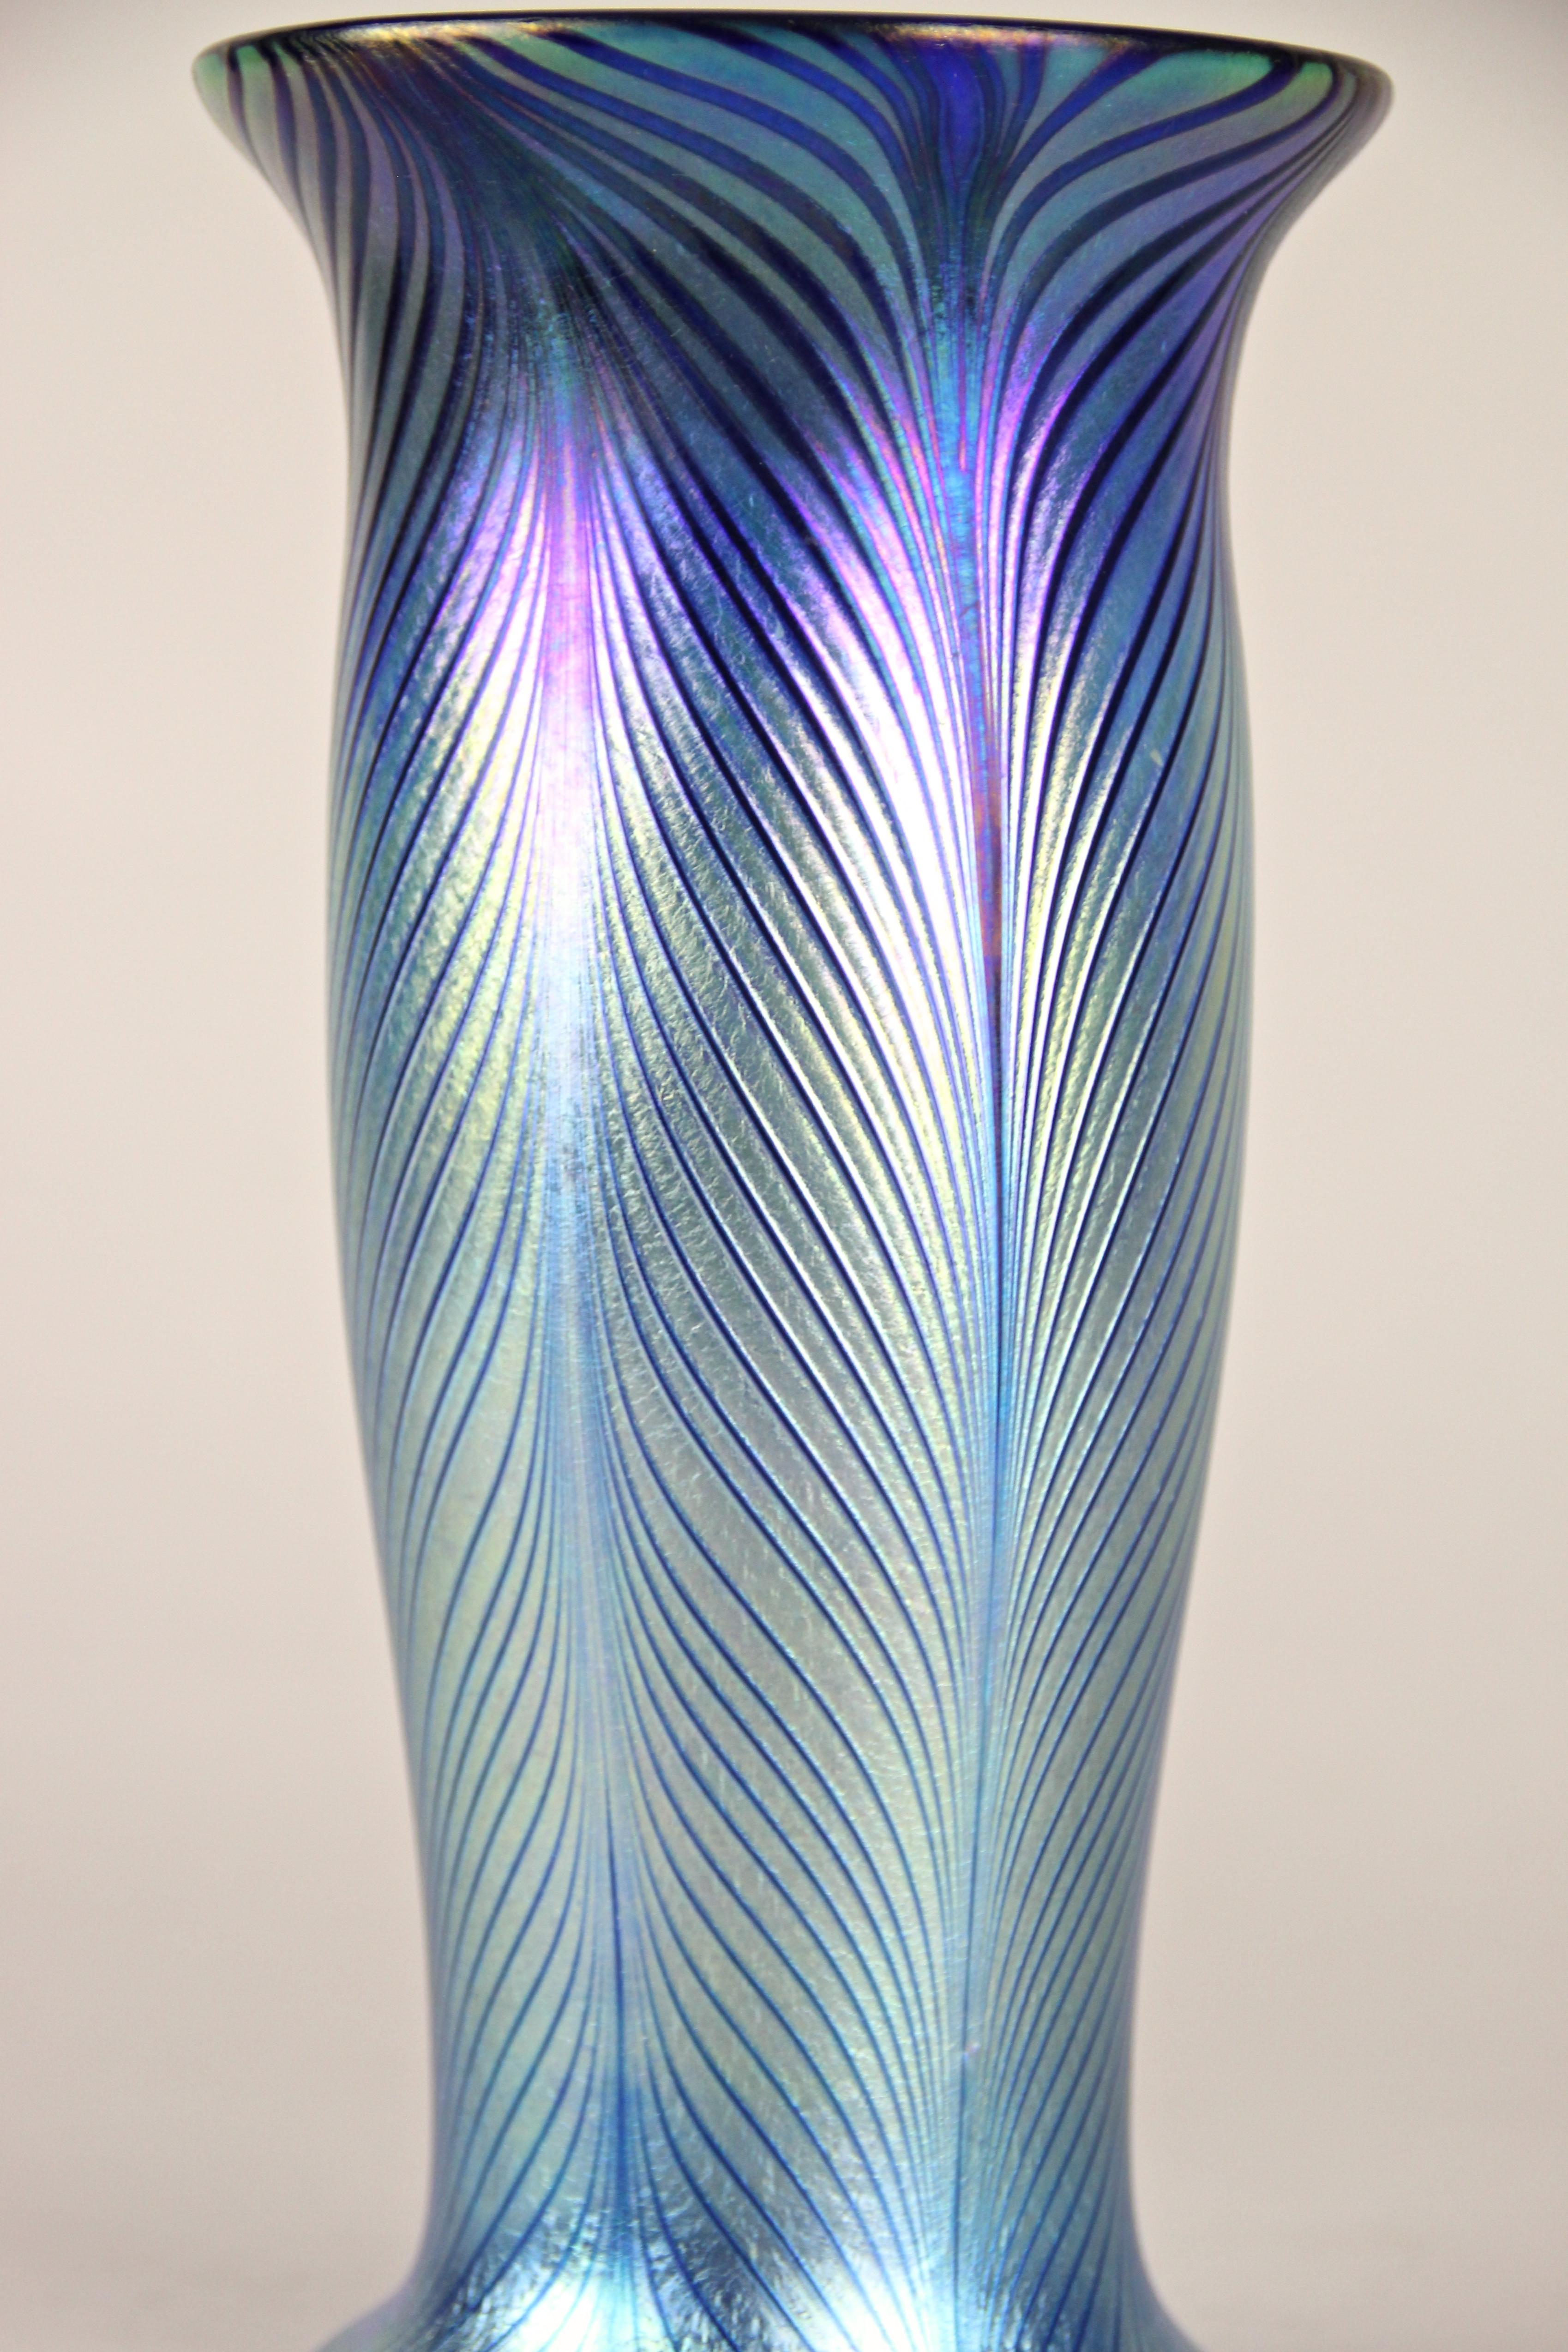 Czech 20th Century Loetz Witwe Glass Vase with Feather Decor Iriscident, CZ circa 1905